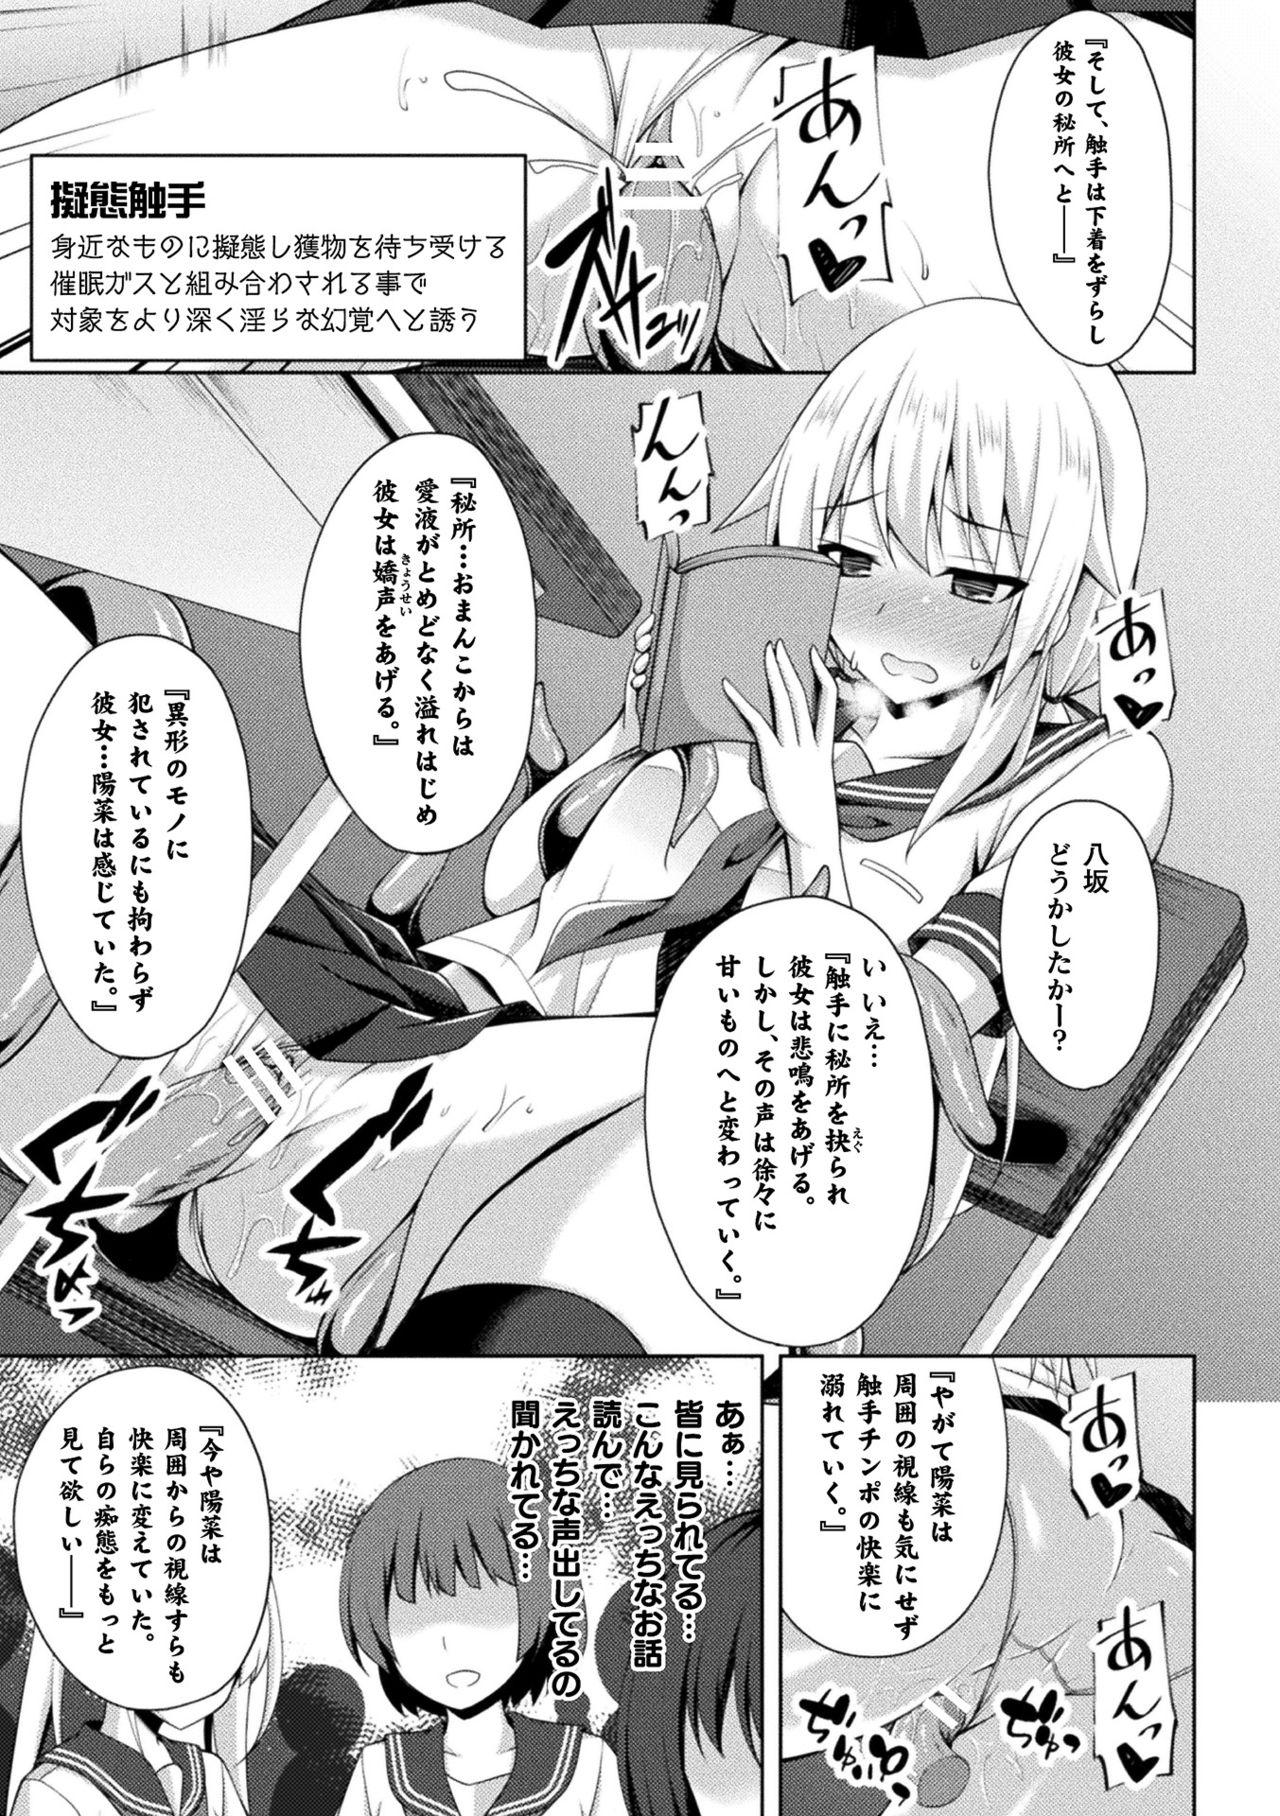 Strange 2D Comic Magazine Zecchou Kairaku ga Tomaranai Ero-Trap Dungeon Vol. 4 Gemidos - Page 11